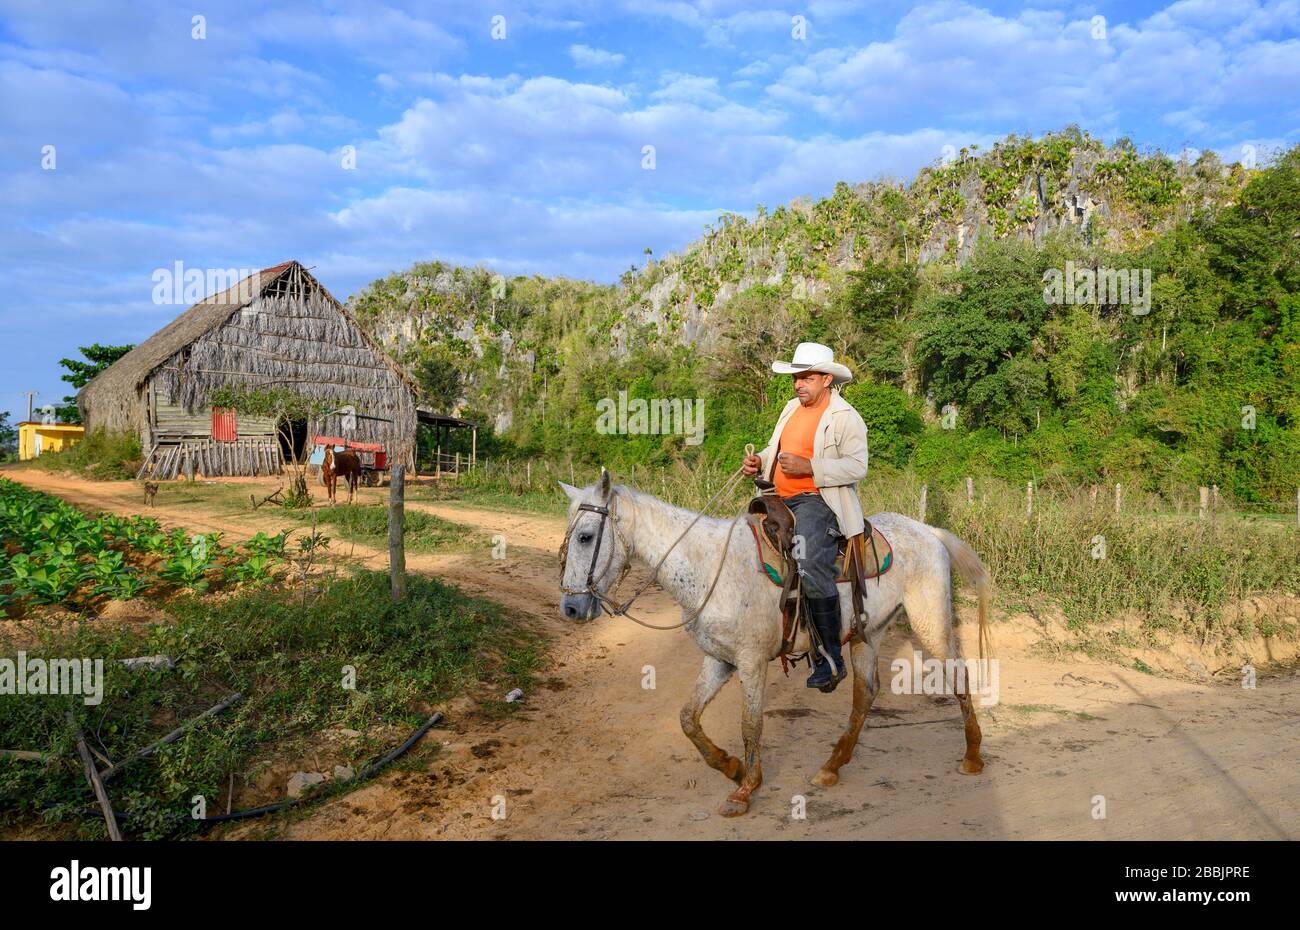 Homme à cheval et champ de tabac à cigares, Vinales, province de Pinar del Rio, Cuba Banque D'Images